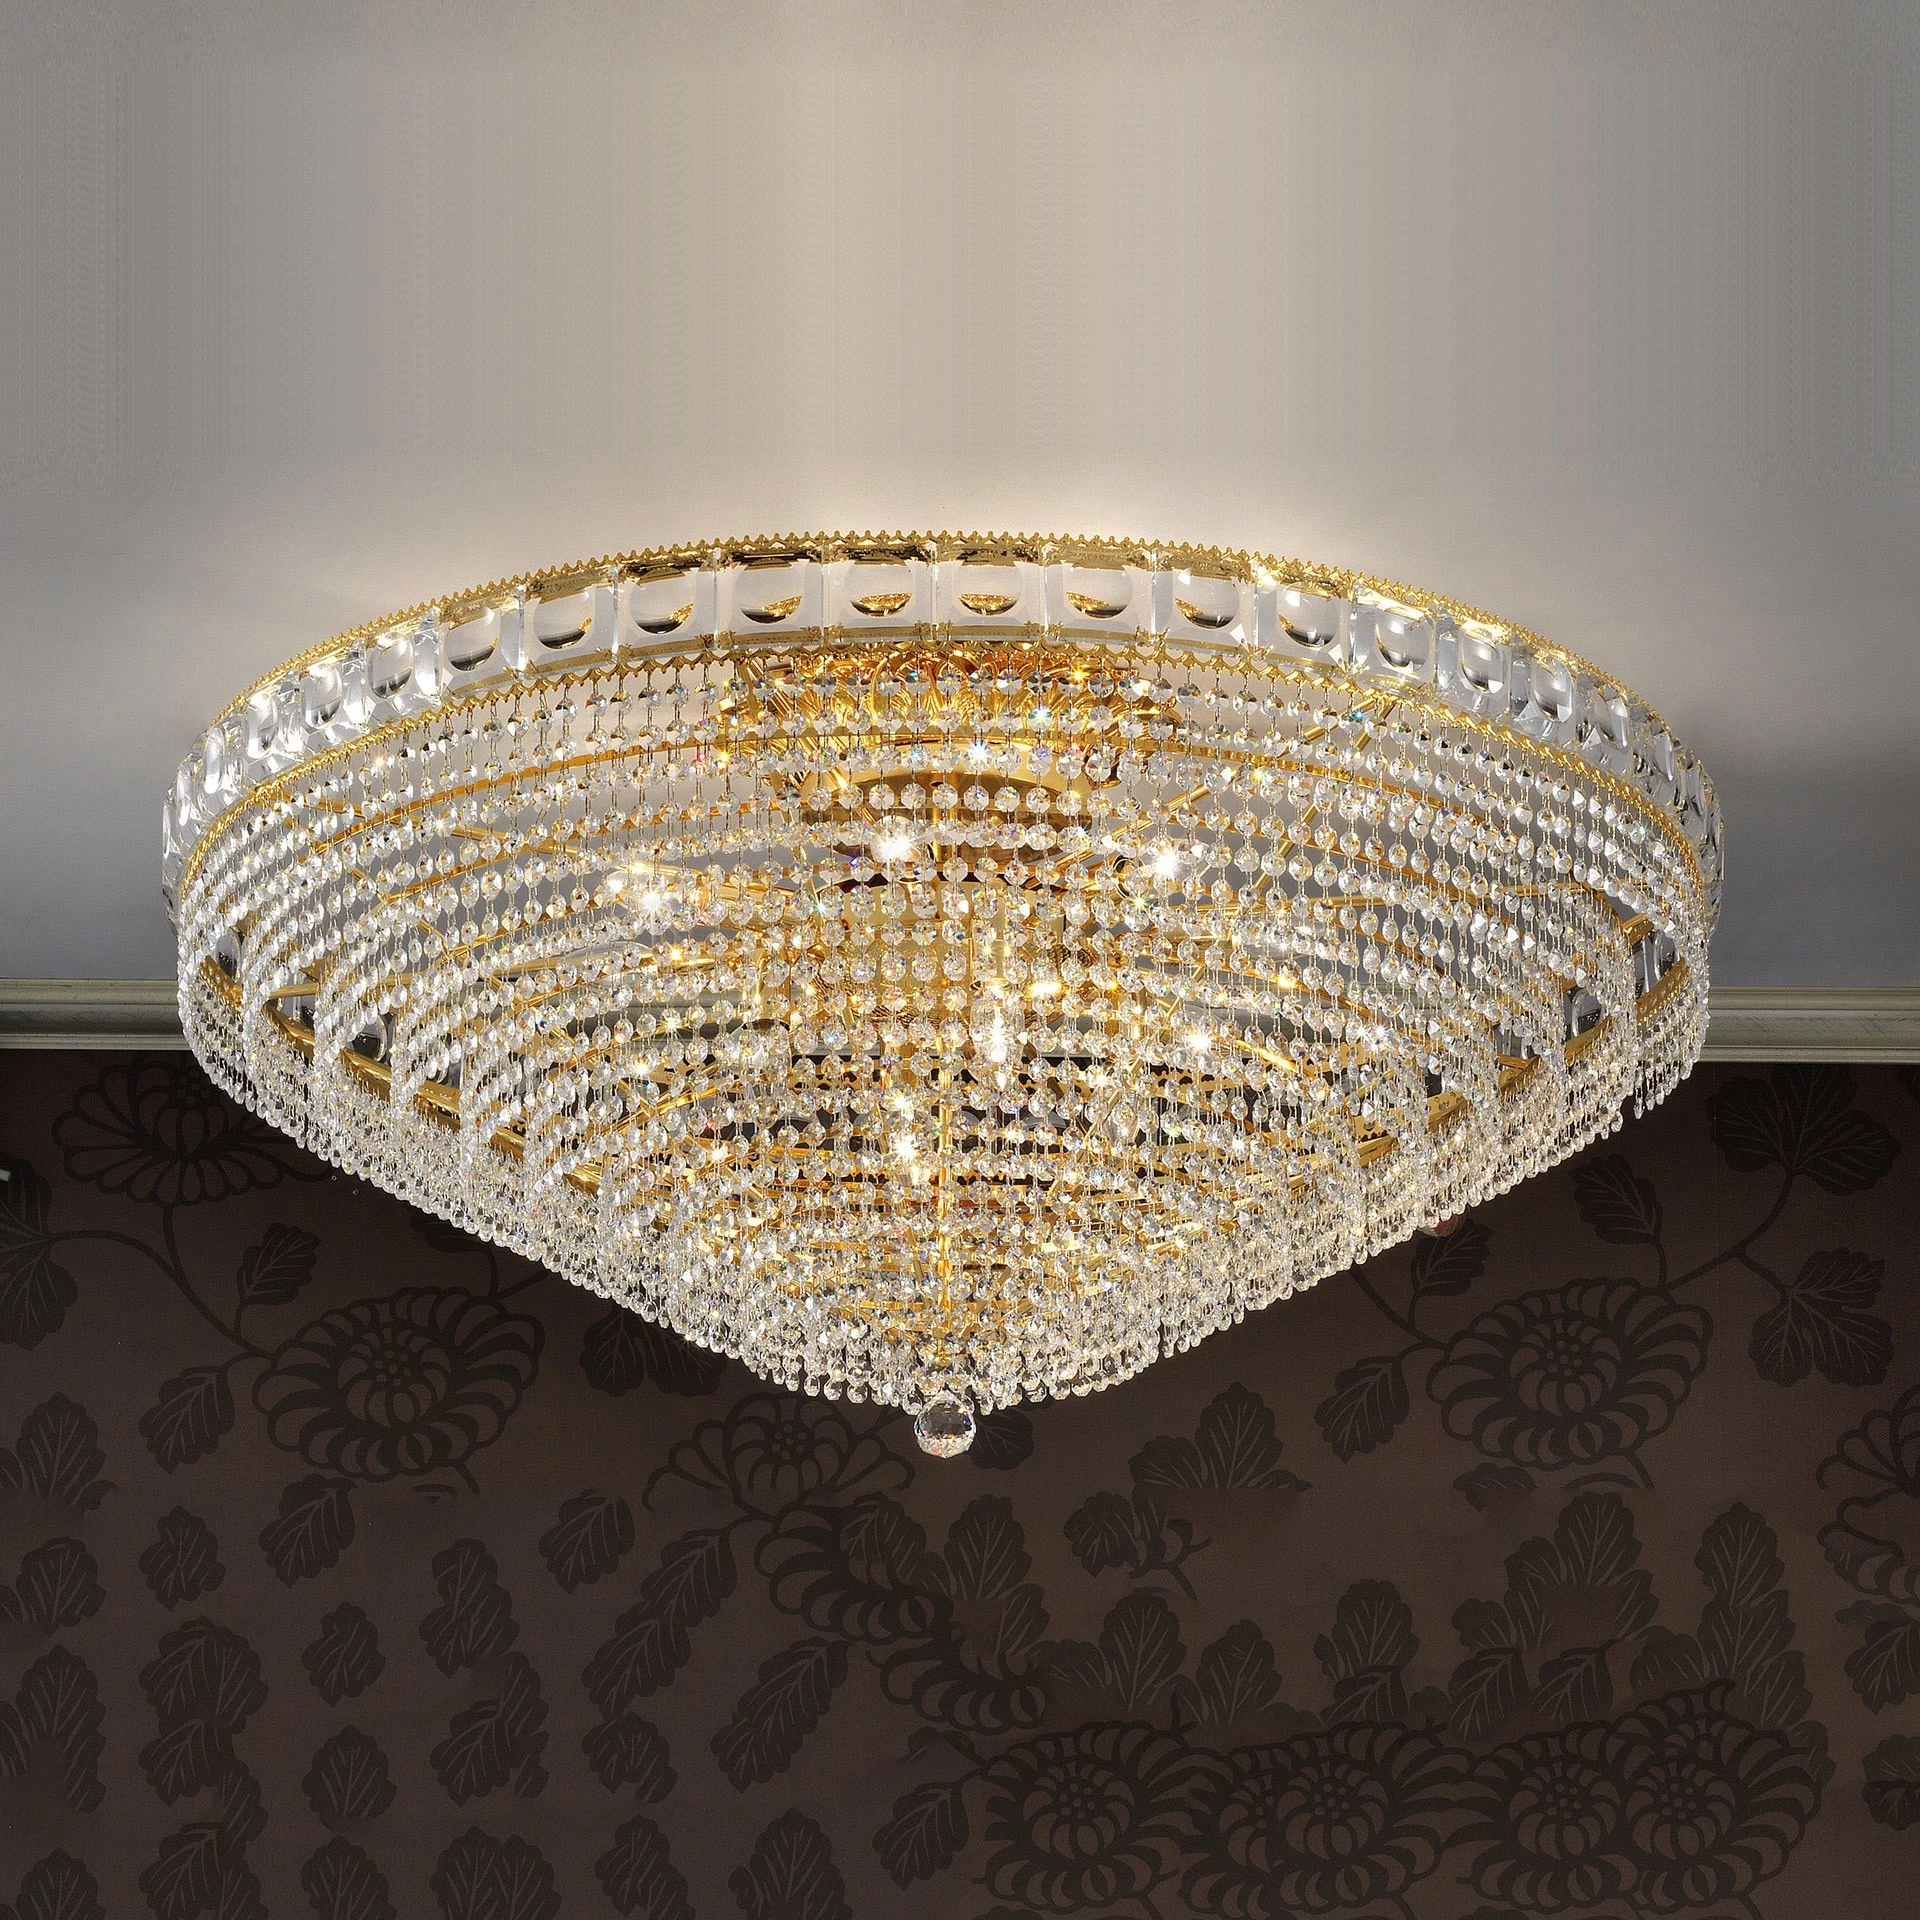 39" flush mount crystal chandelier for living room